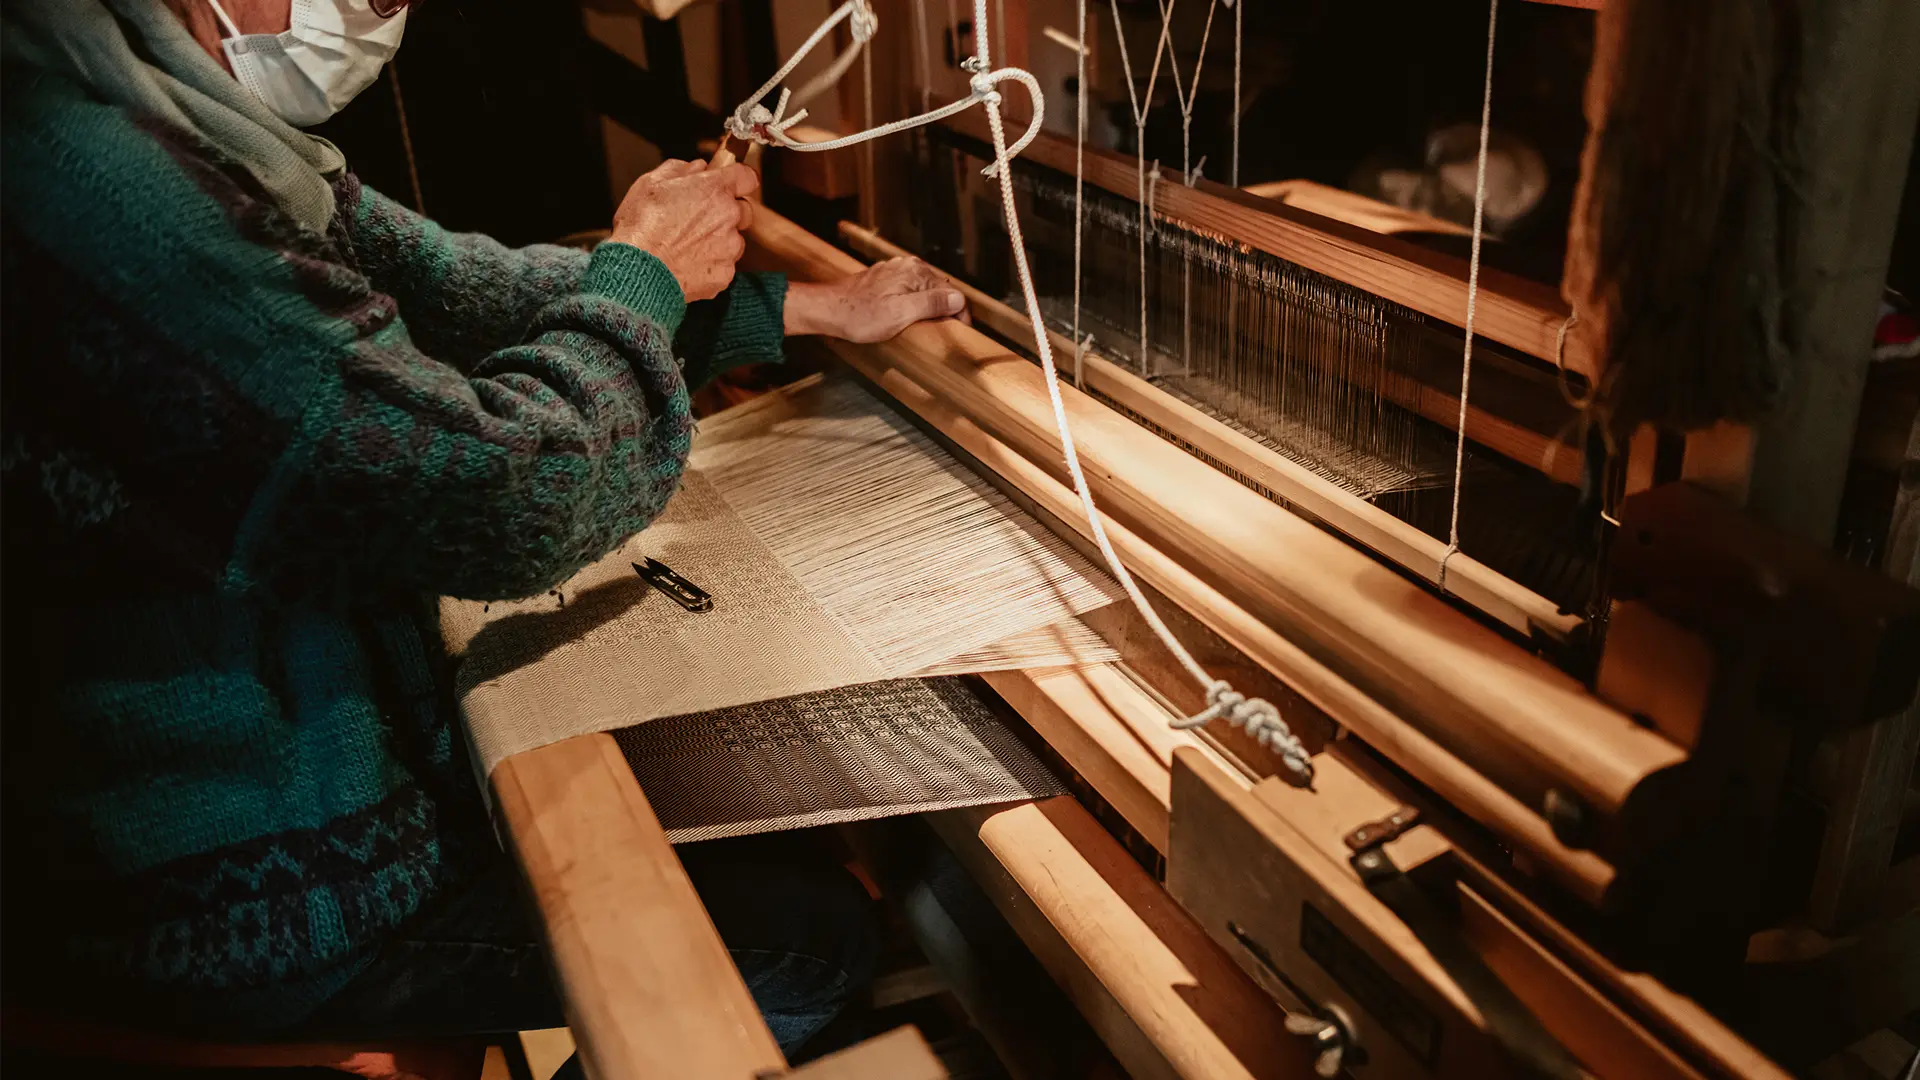 weaving on the loom in chianti